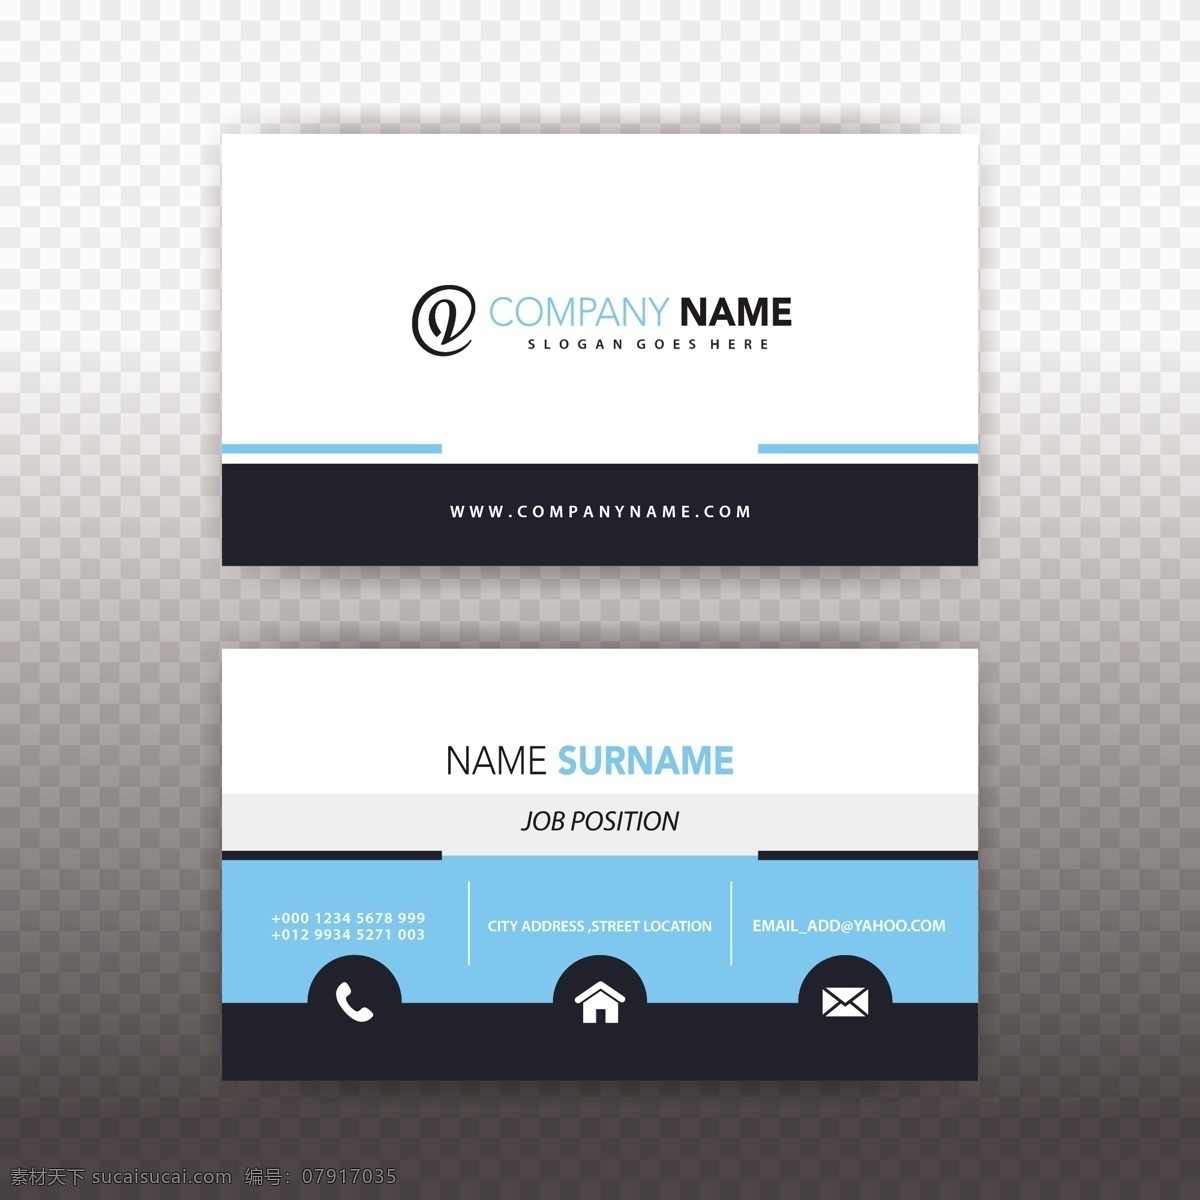 蓝白名片 商标 名片 商务 抽象 卡片 模板 蓝色 办公室 展示 文具 公司 抽象标志 企业标识 品牌 现代 白色 身份